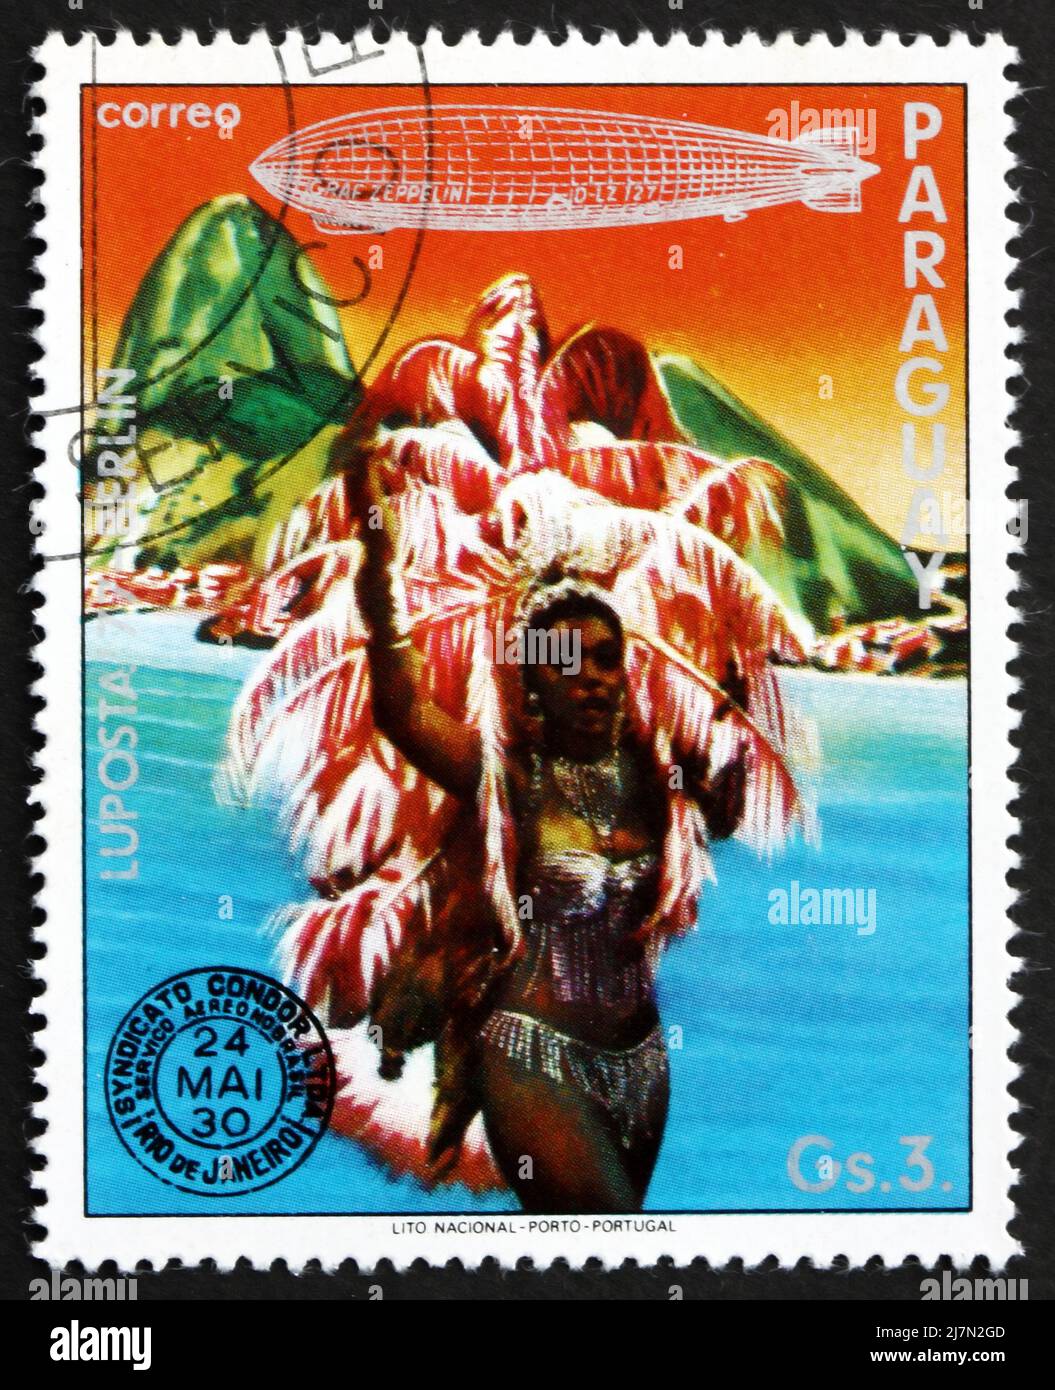 PARAGUAY - VERS 1977: Un timbre imprimé au Paraguay montre Dancer, Rio de Janeiro, Brésil, Graf Zeppelin 1st South America Flight, vers 1977 Banque D'Images